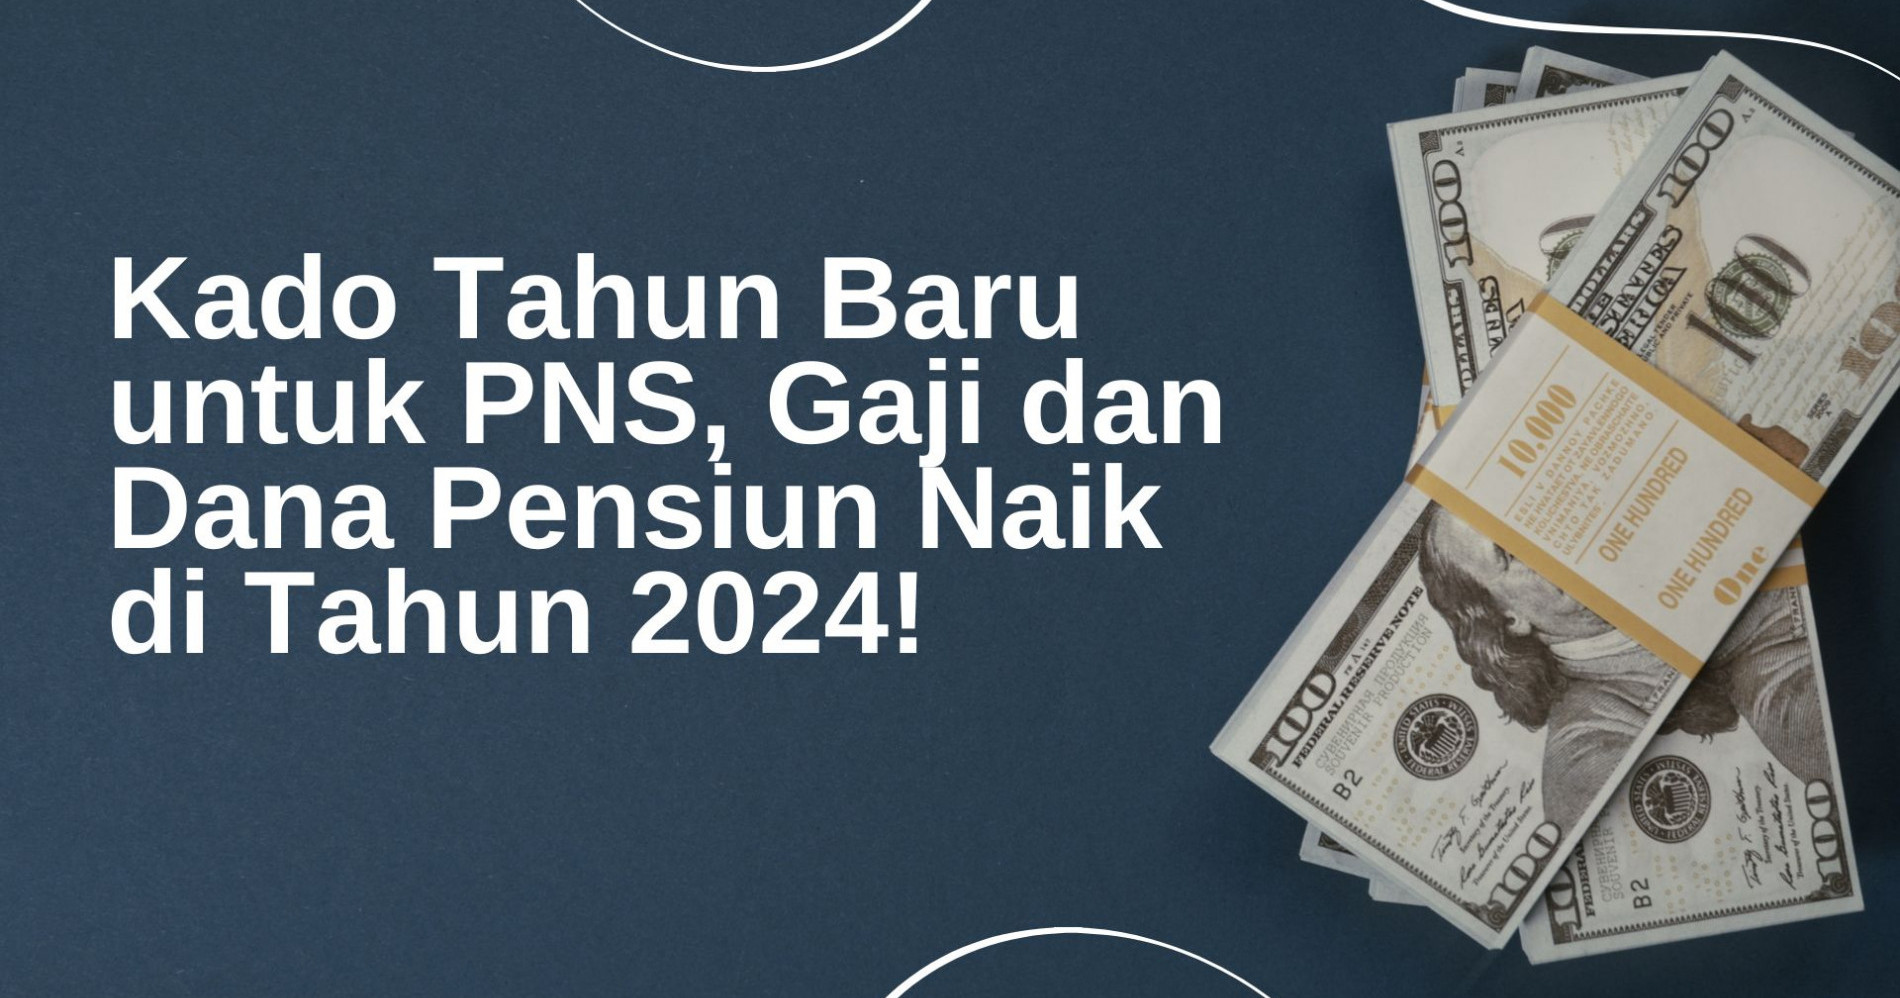 Gambar Ilustrasi Kado Tahun Baru untuk PNS, Gaji dan Dana Pensiun Naik di Tahun 2024!